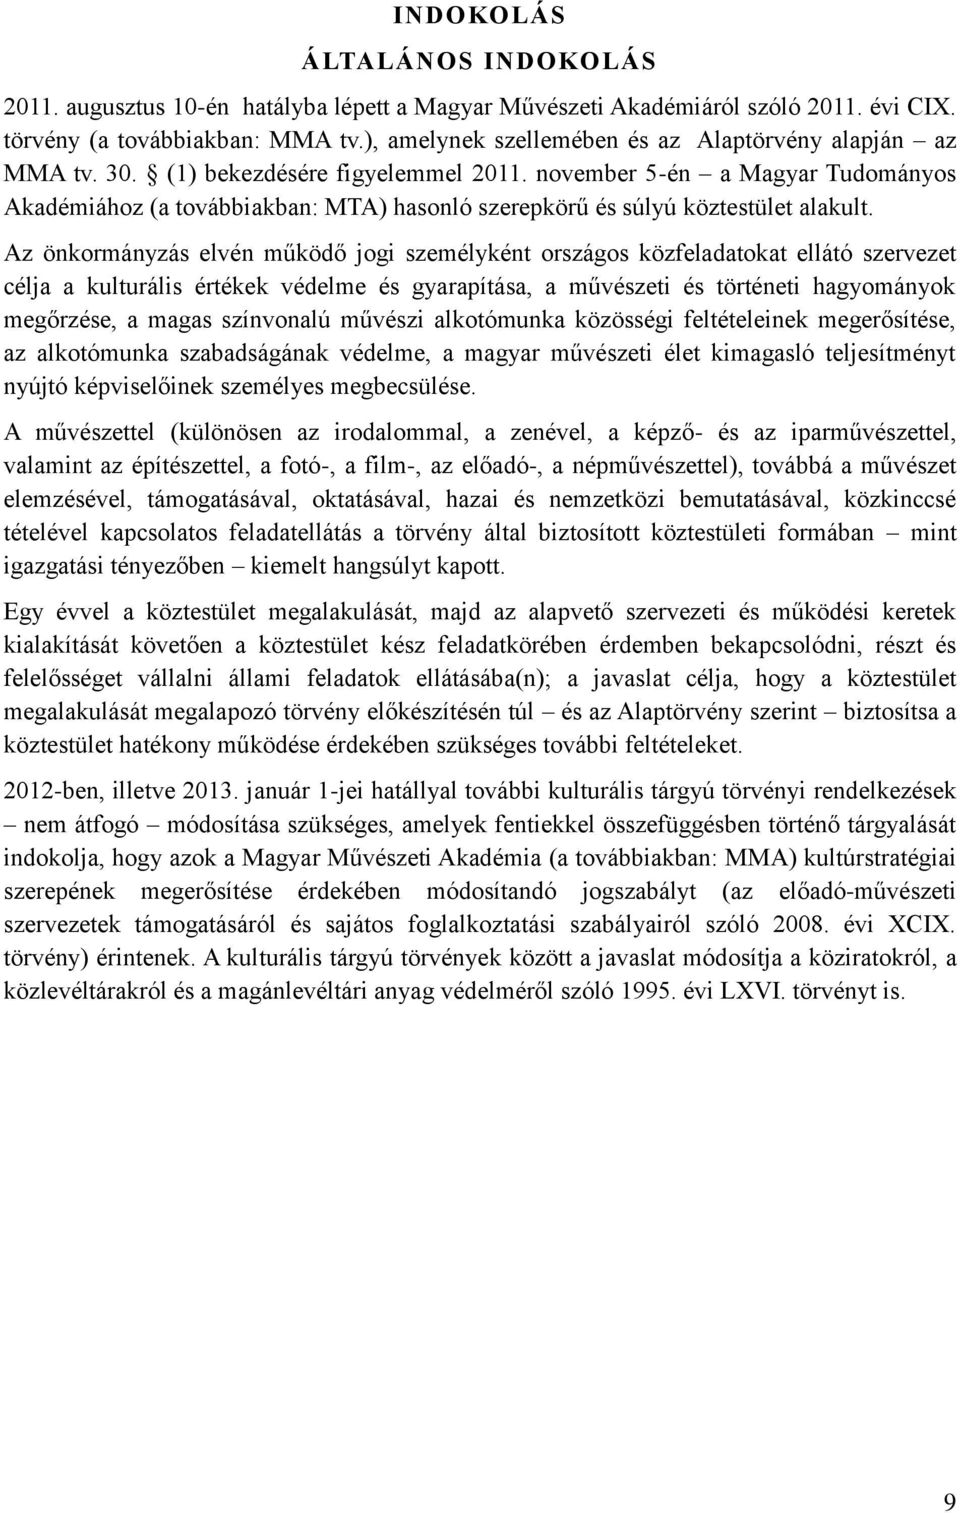 november 5-én a Magyar Tudományos Akadémiához (a továbbiakban: MTA) hasonló szerepkörű és súlyú köztestület alakult.